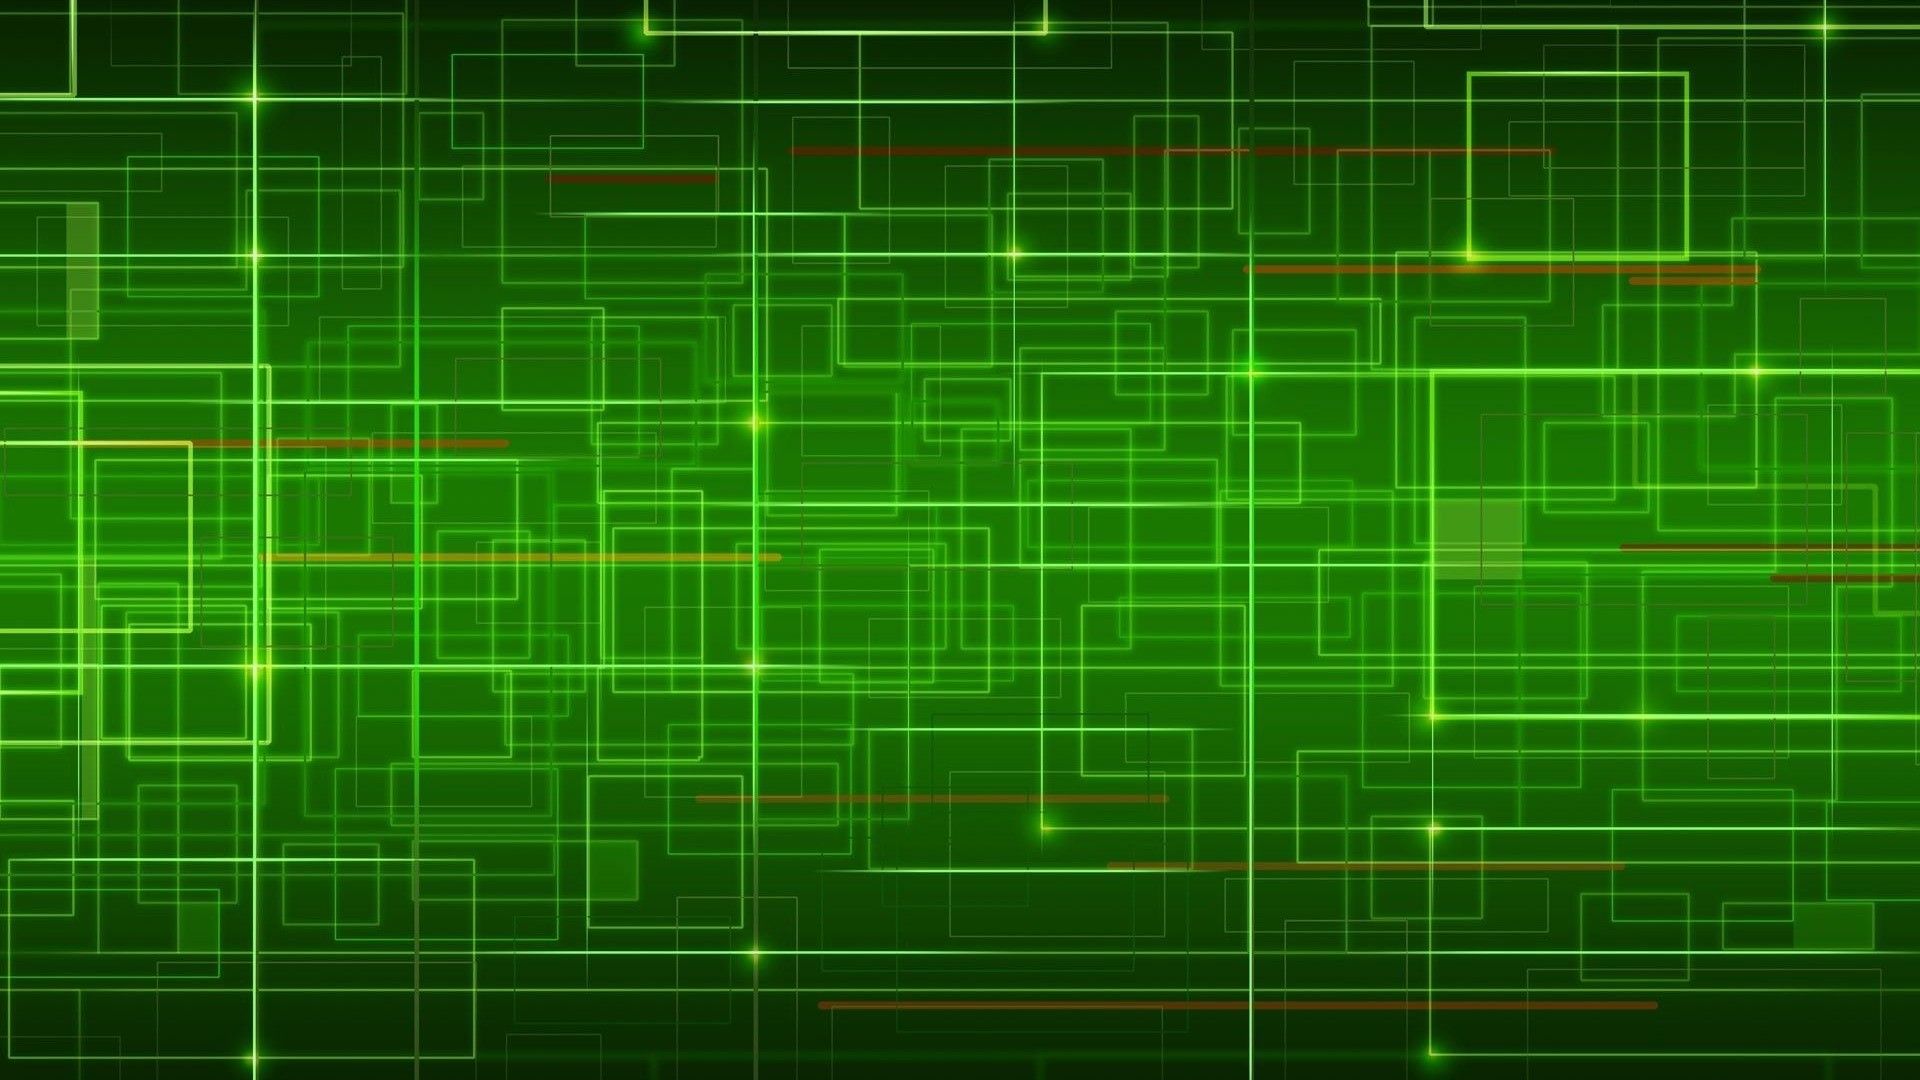 Bạn muốn khám phá những hình nền máy tính màu xanh lá cây chất lượng cao với độ phân giải tuyệt vời? Với những hình nền này, bạn sẽ trải nghiệm rõ rệt sự sắc nét và chi tiết của màn hình máy tính của mình, tạo nên một trải nghiệm độc đáo.